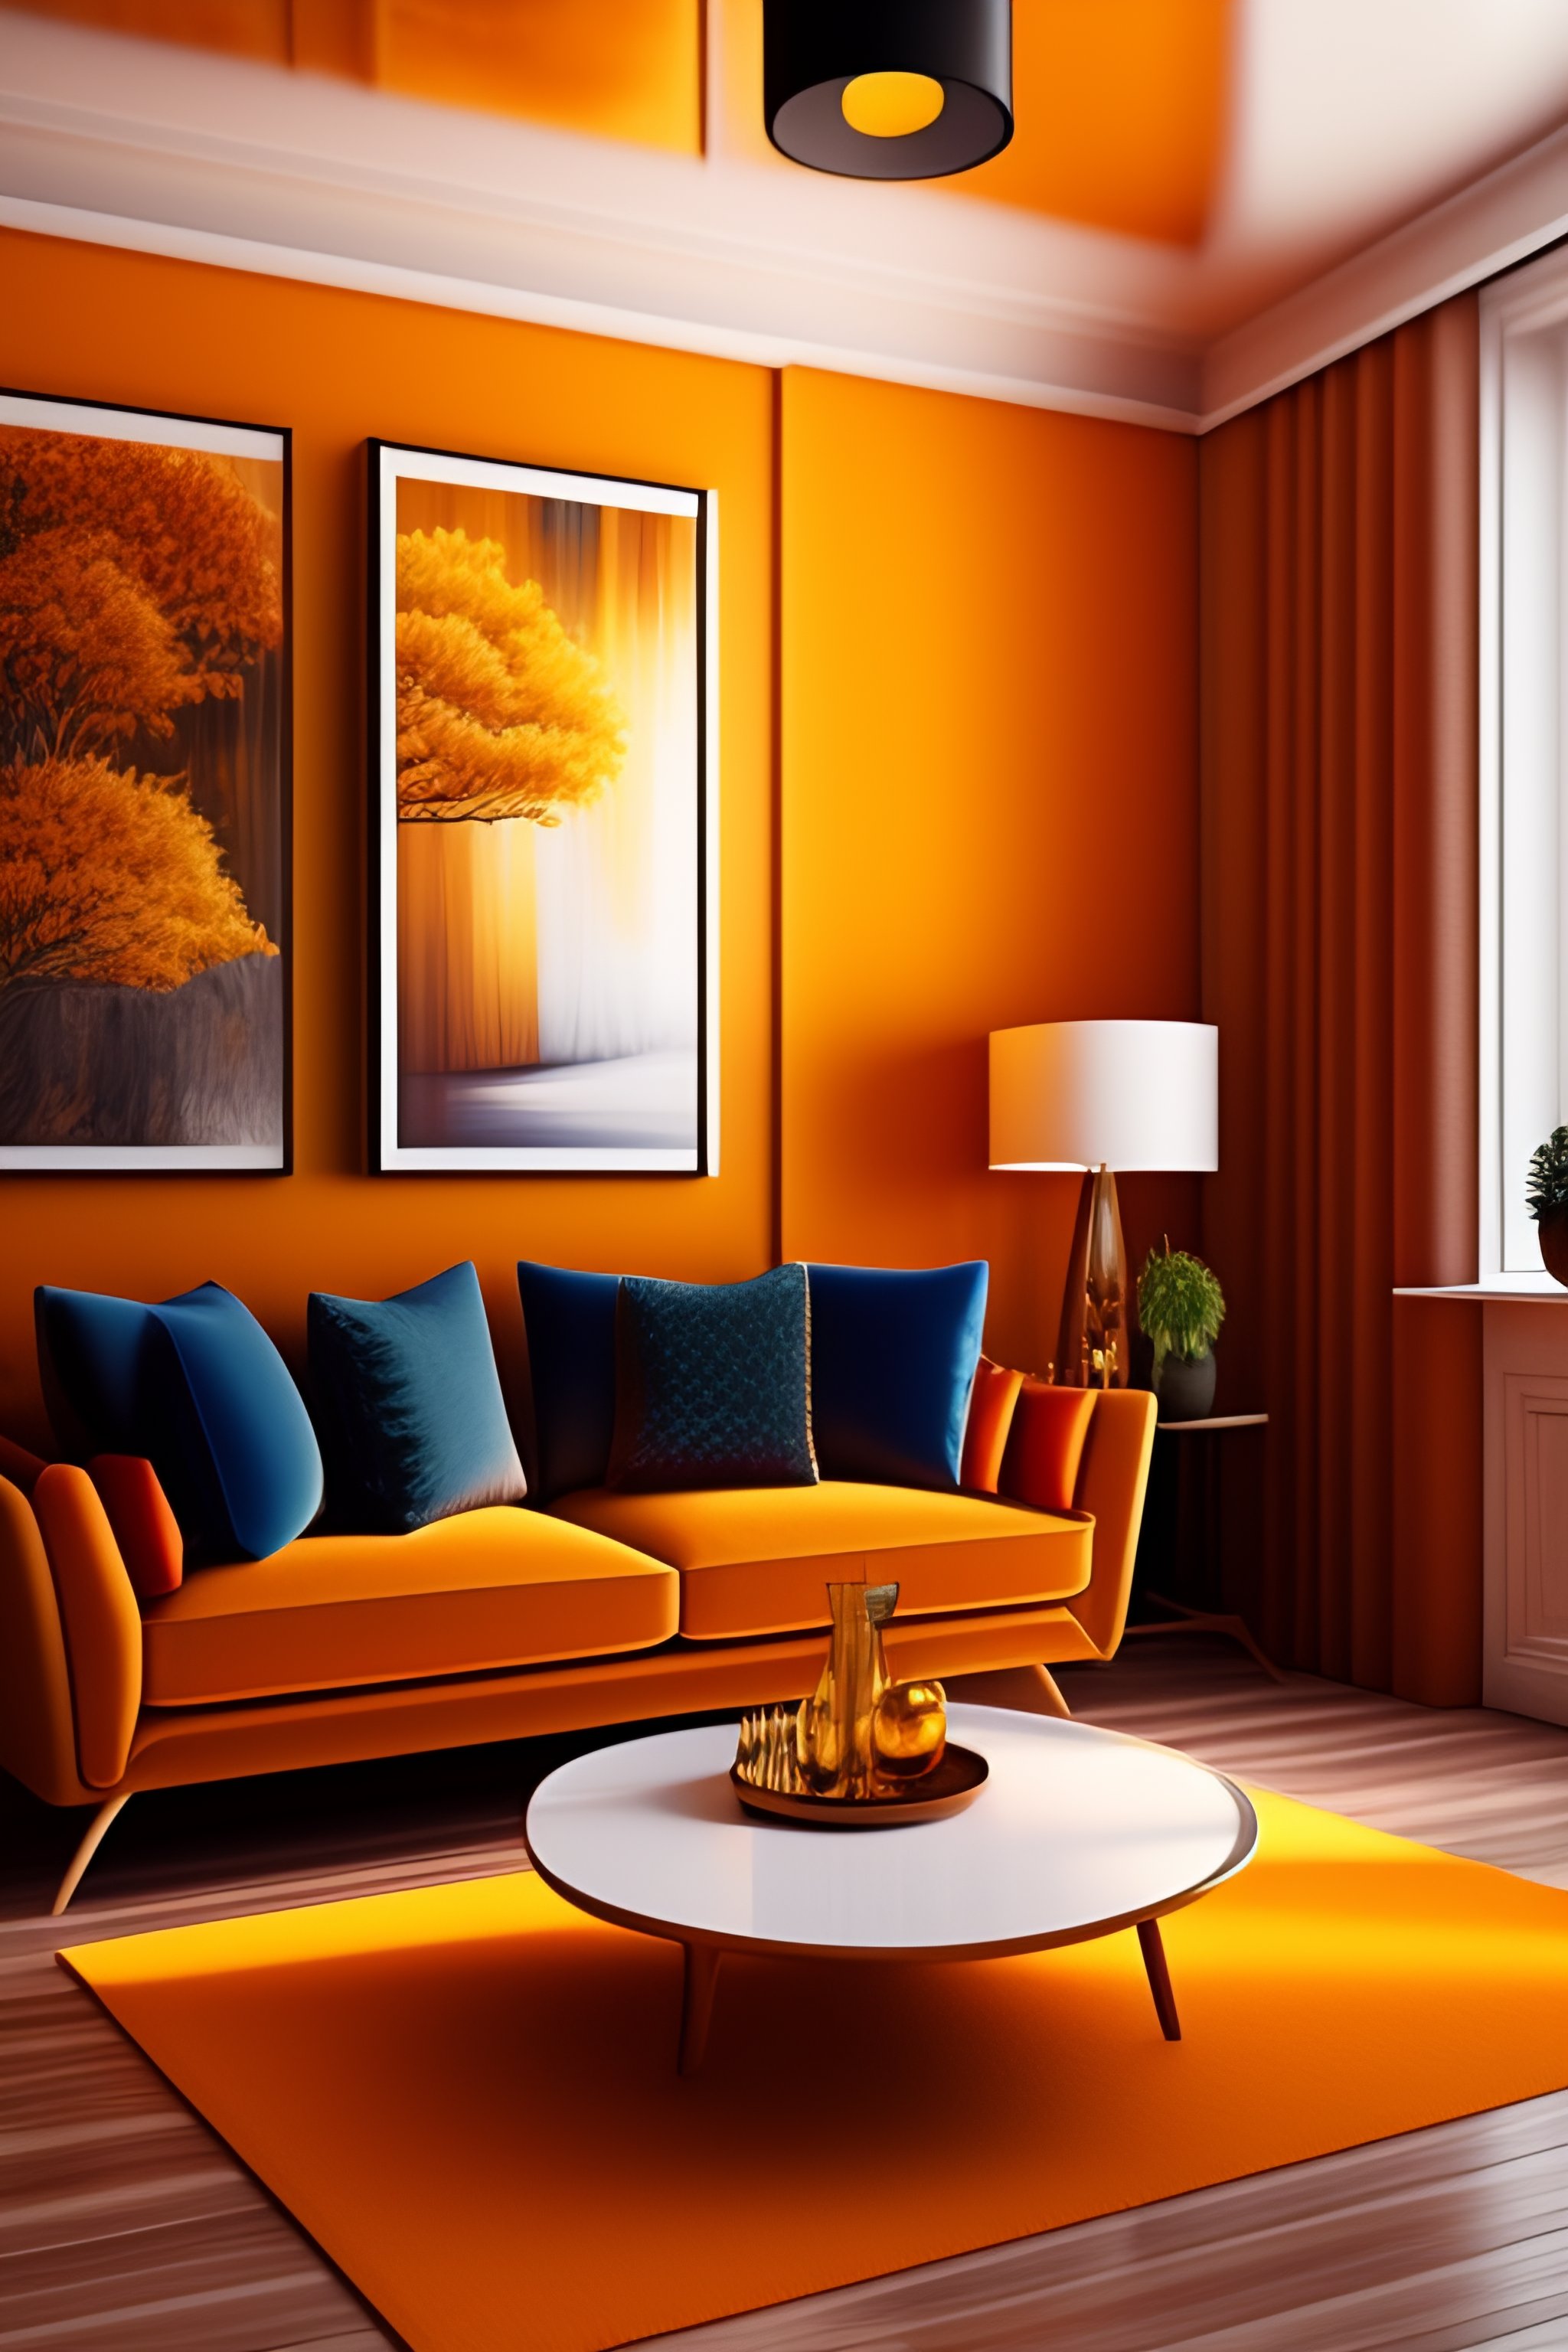 Lexica - Interior design of a beautiful cozy living room, vivid ...